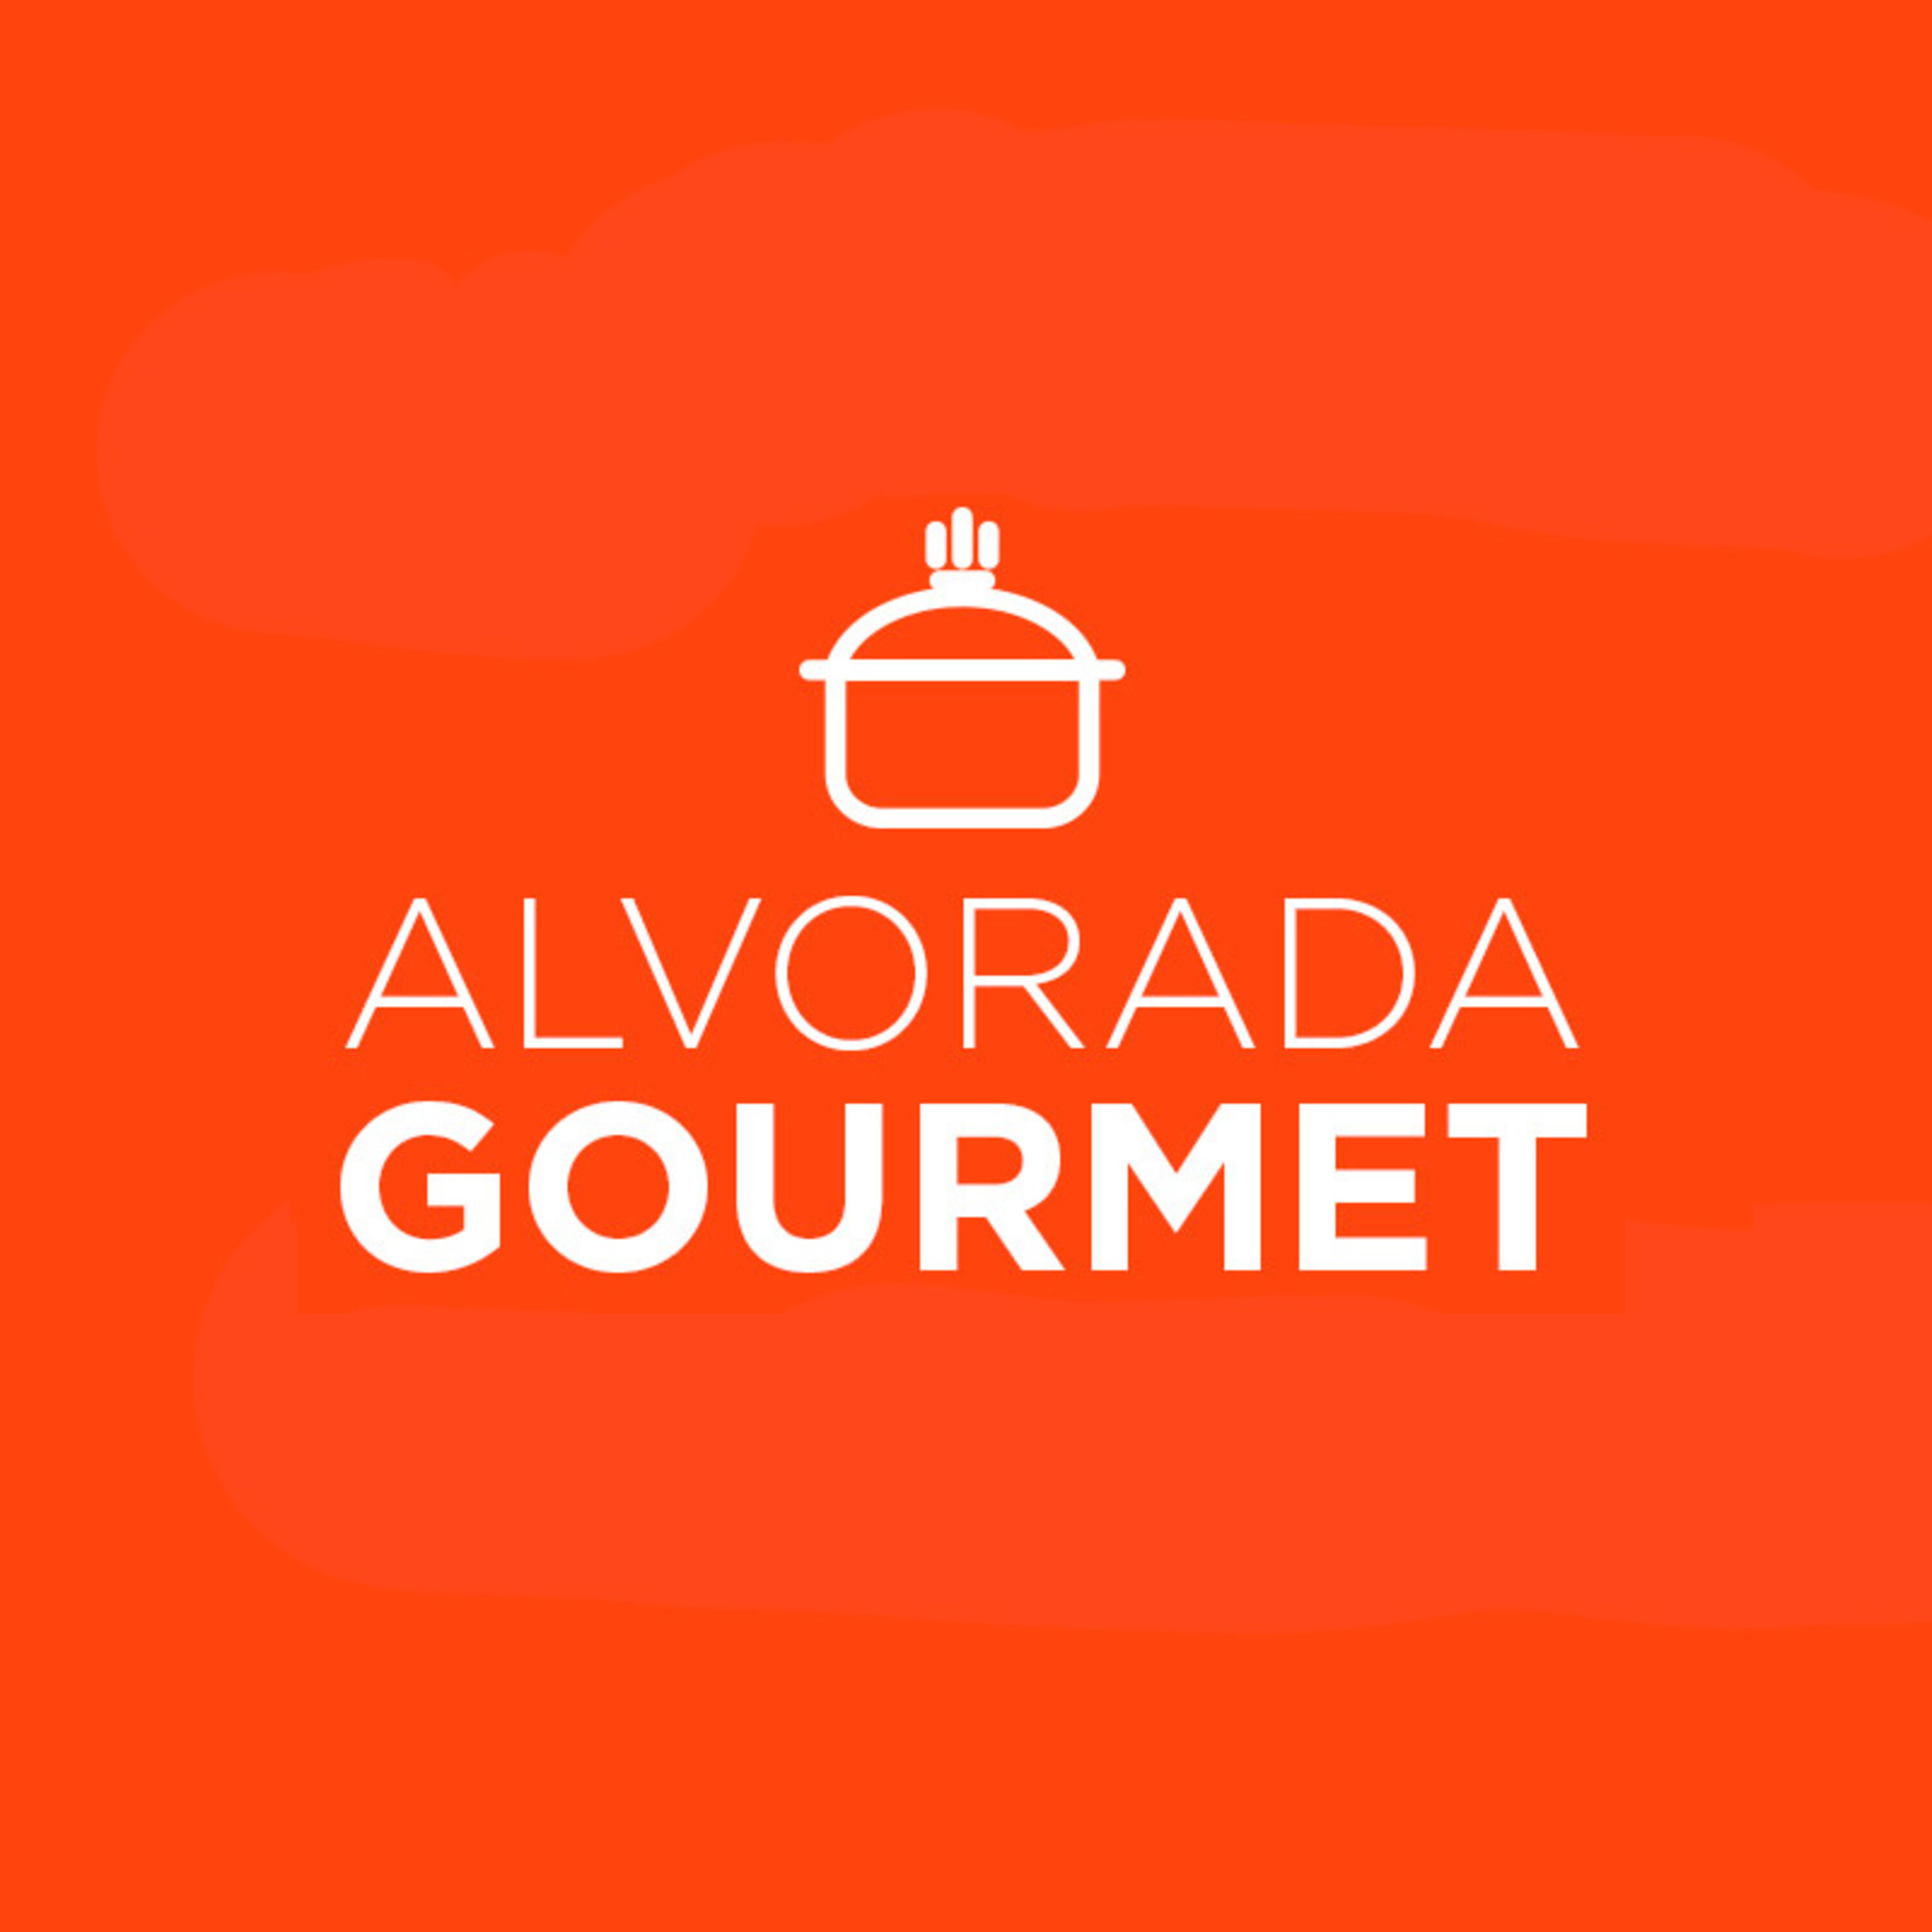 Alvorada Gourmet - Alvorada Gourmet -  Série de receitas de sucos revigorantes - Suco verde